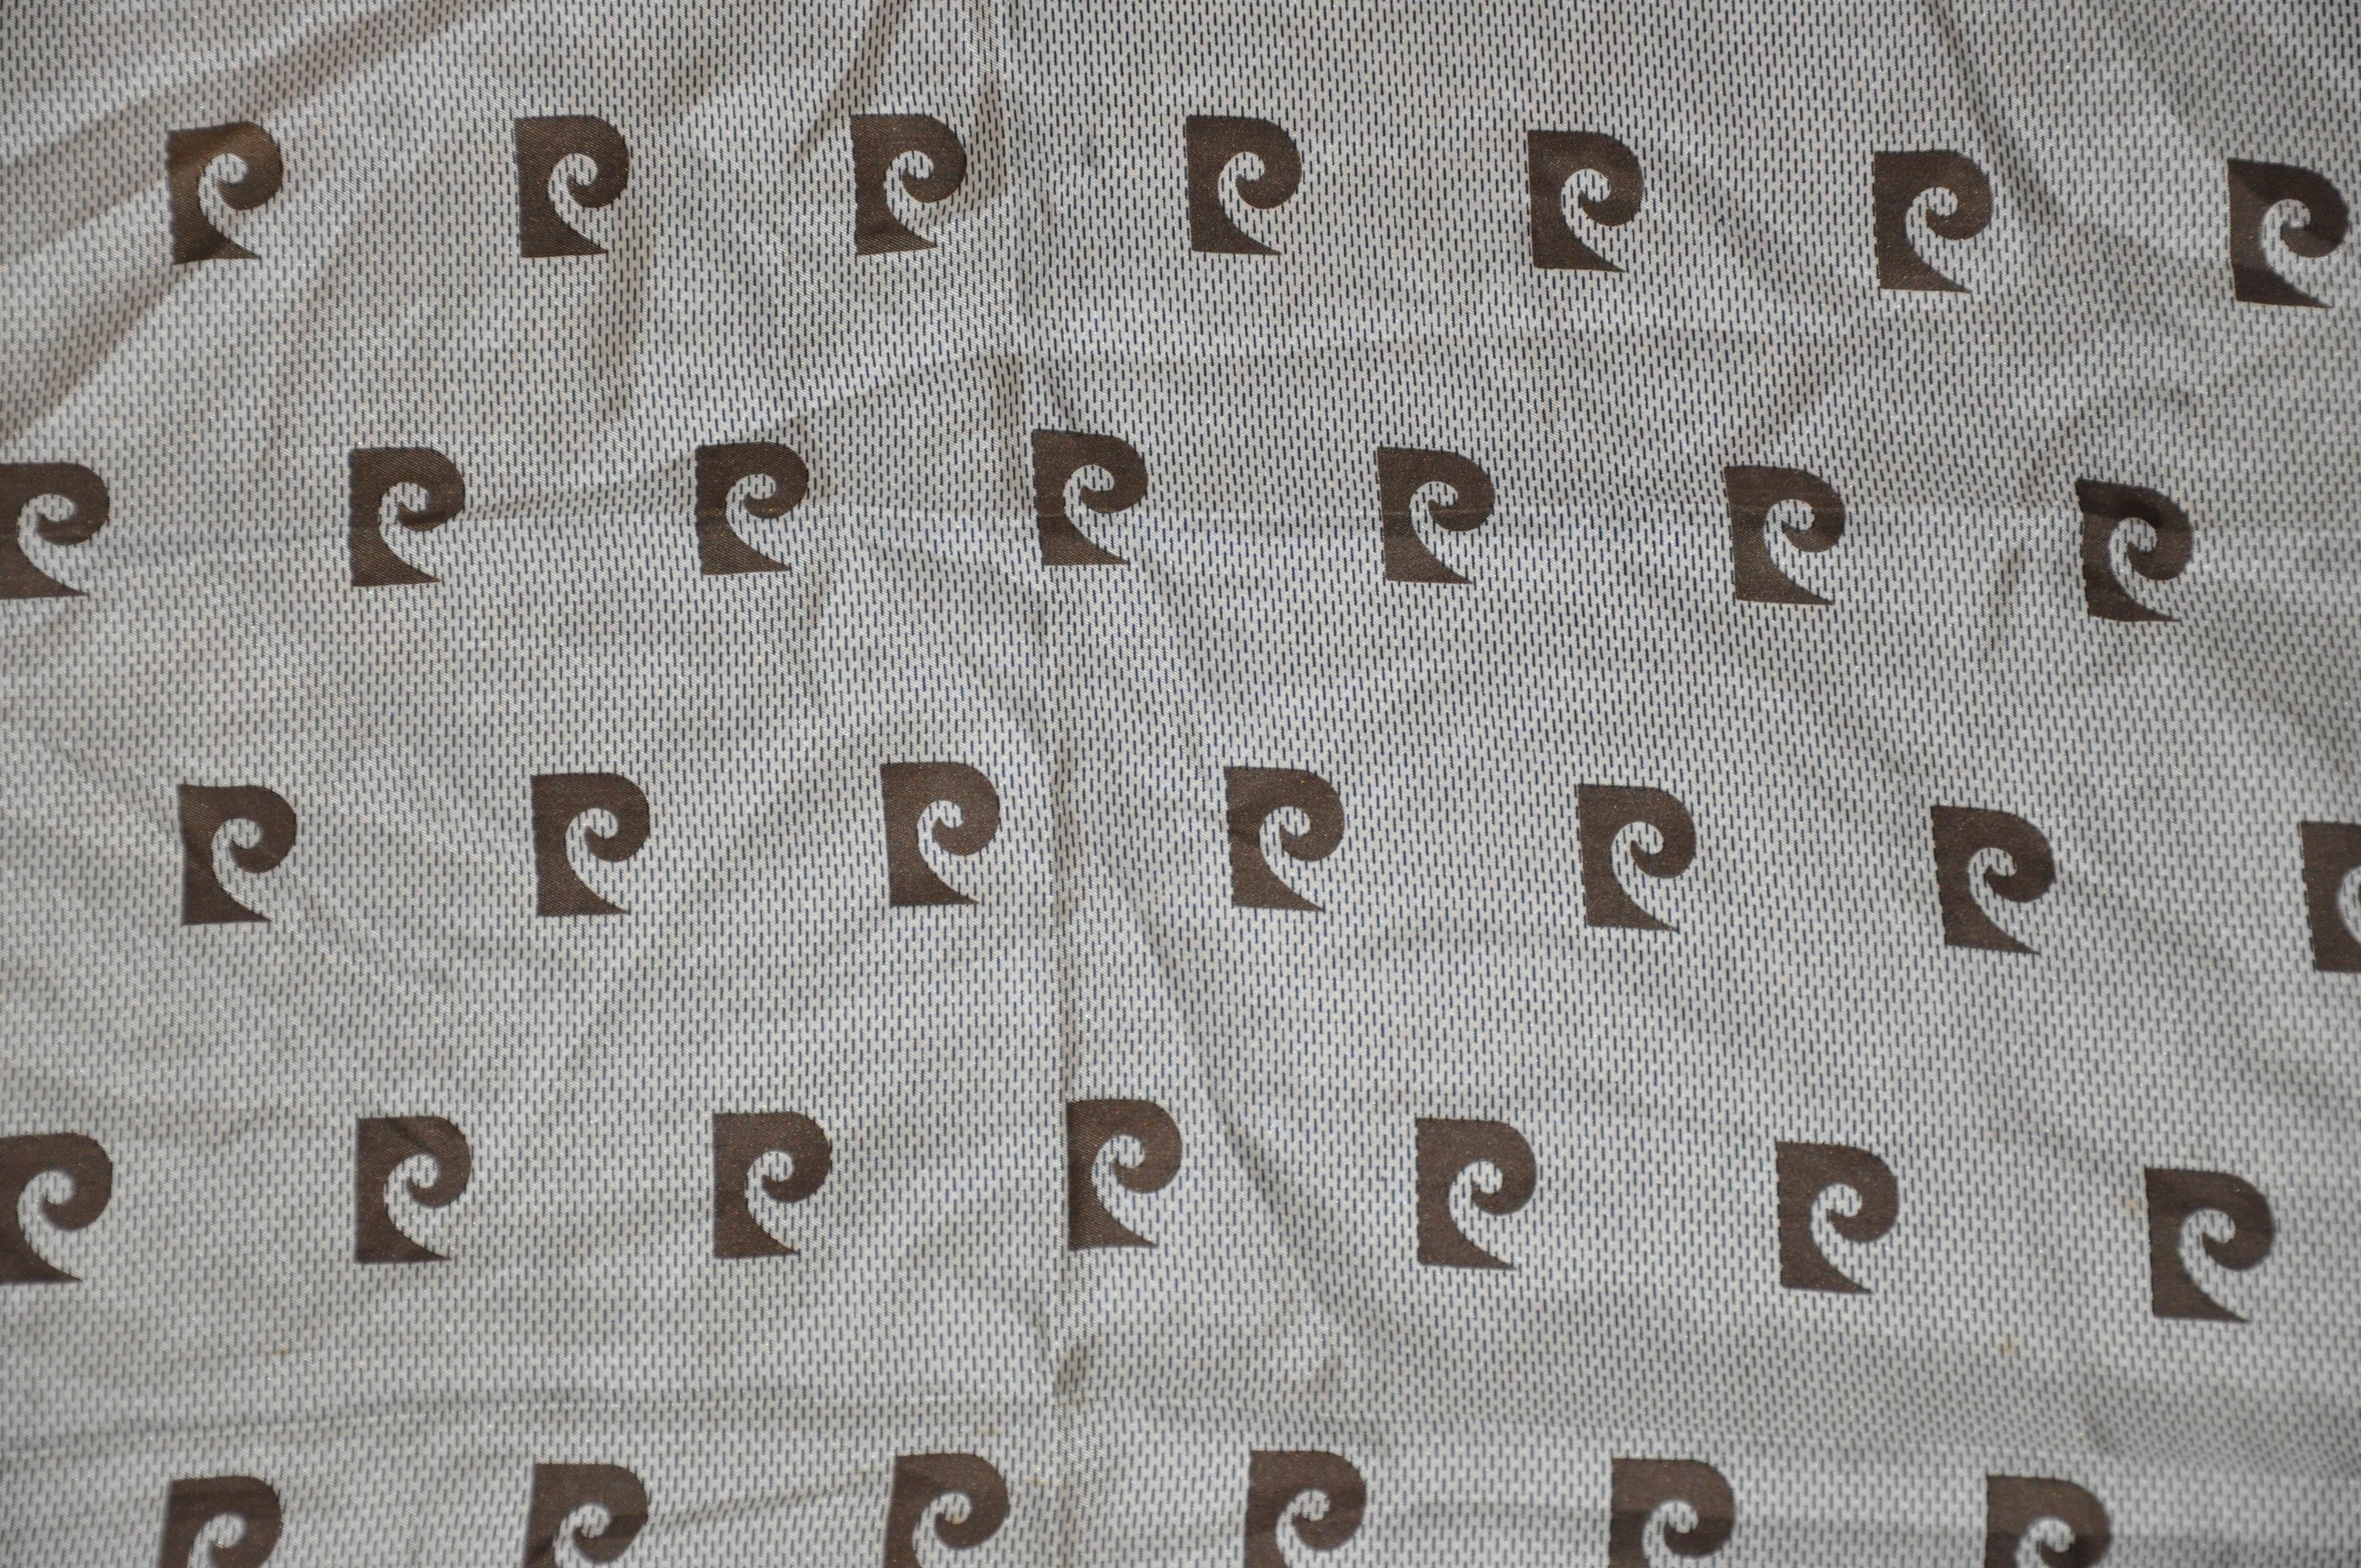      Pierre Cardin merveilleuse écharpe en soie marron coco et ivoire à logo signature avec bords roulés à la main, mesure 25 pouces par 25 pouces et demi. Fabriqué en France.
